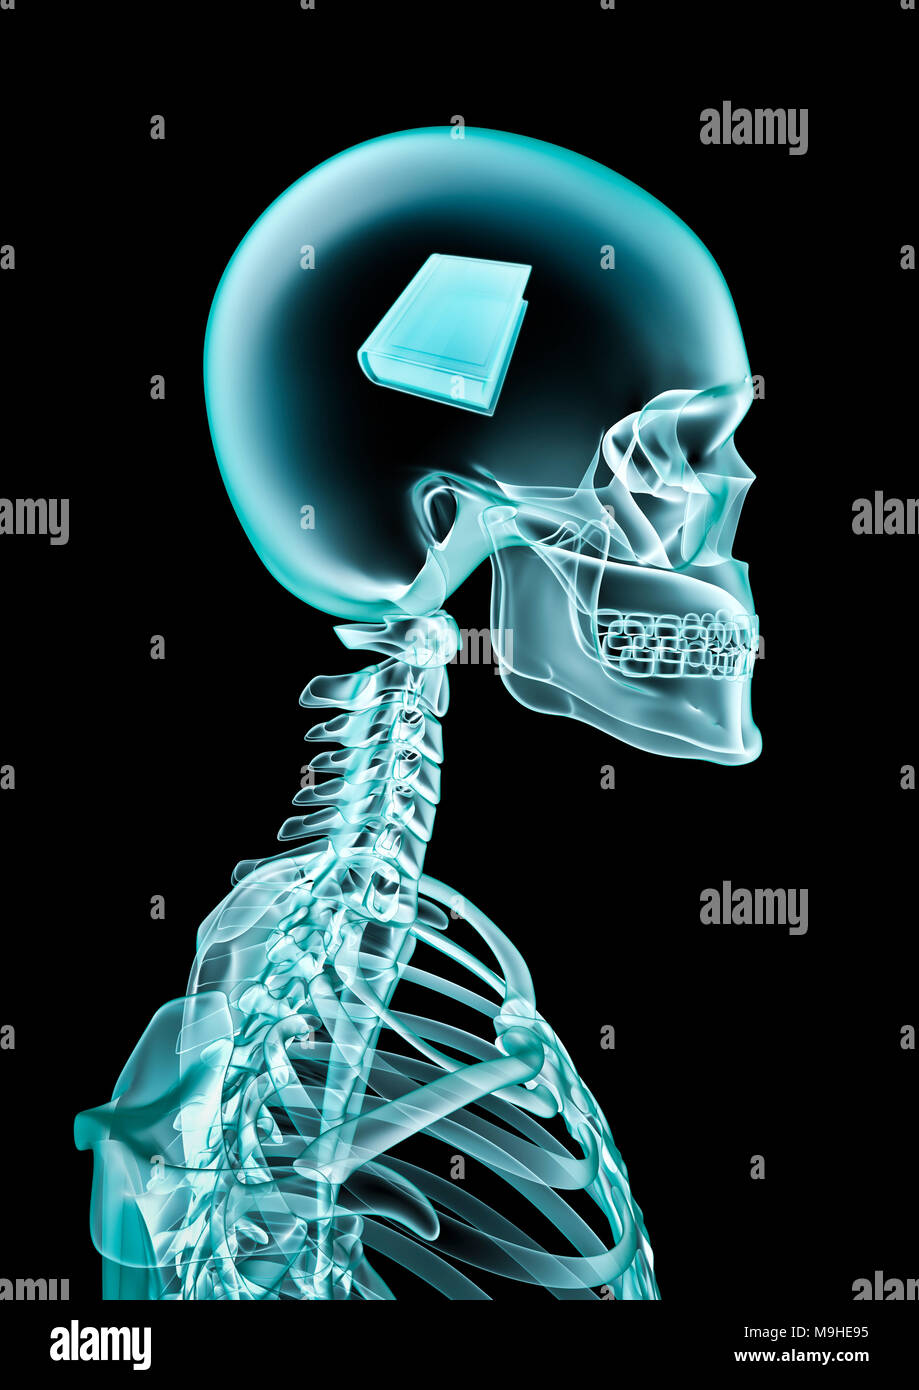 X-ray prenota amante / 3D illustrazione di scheletro umano x-ray mostra spessore libro all'interno della testata Foto Stock